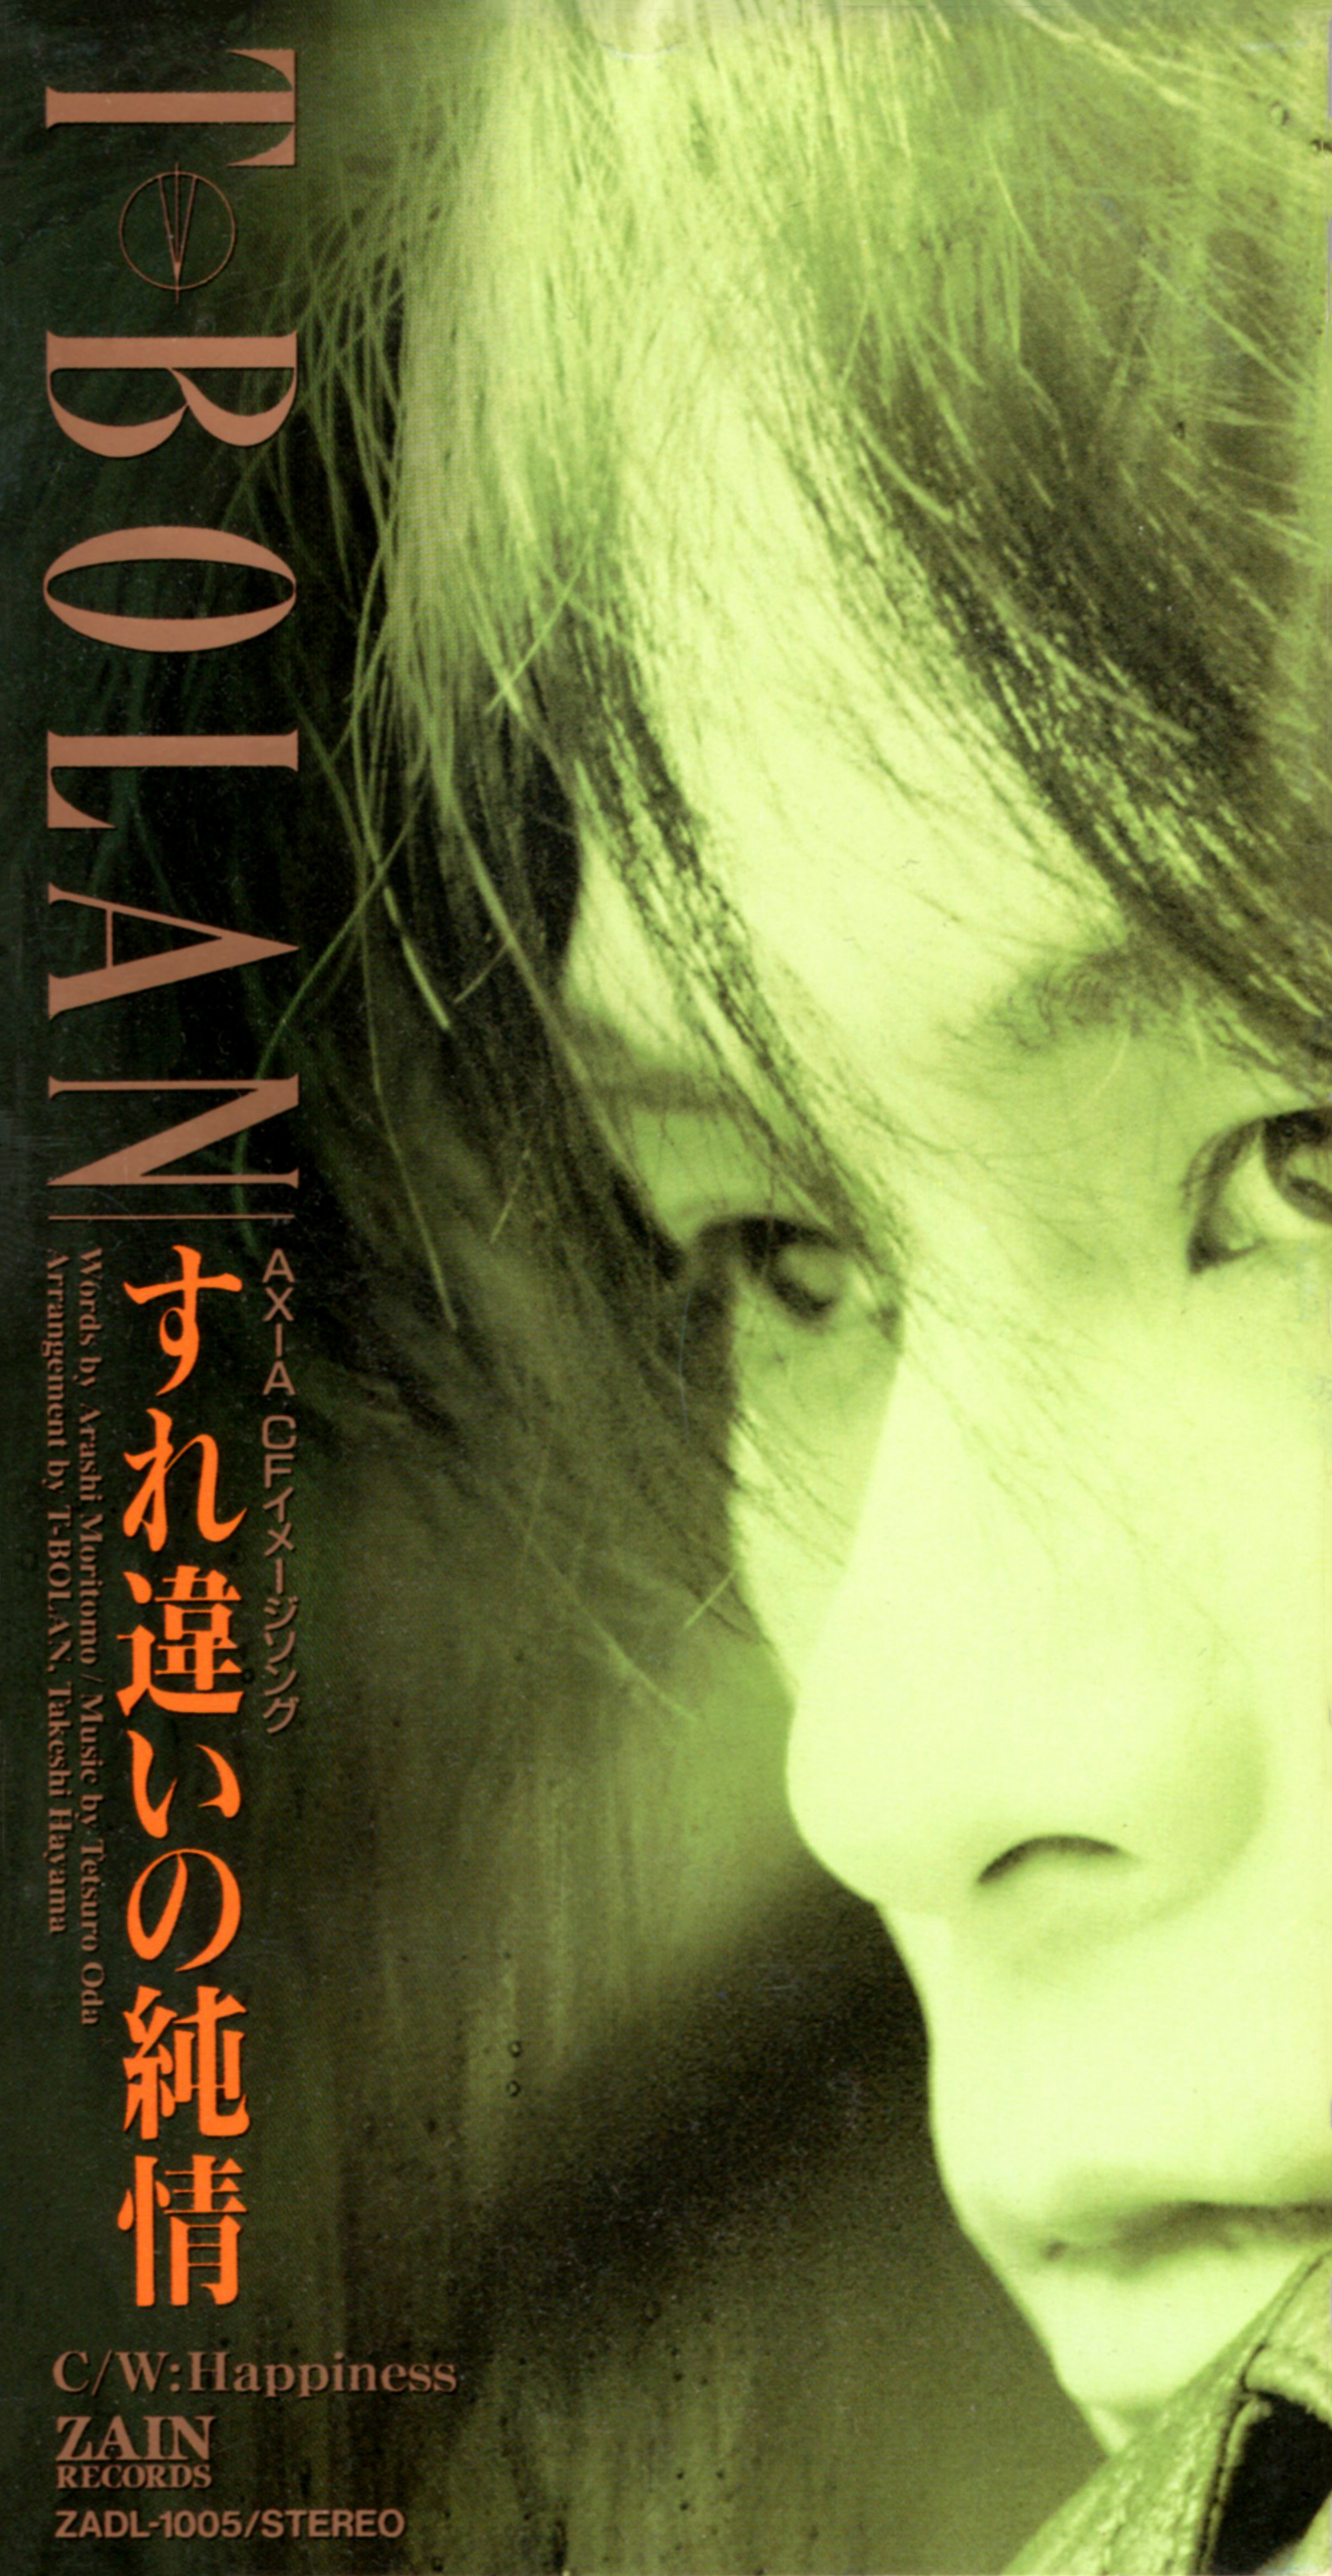 T-BOLAN (ティー・ボラン) 8thシングル『すれ違いの純情』(1993年3月10日発売) 高画質CDジャケット画像 (ジャケ写)